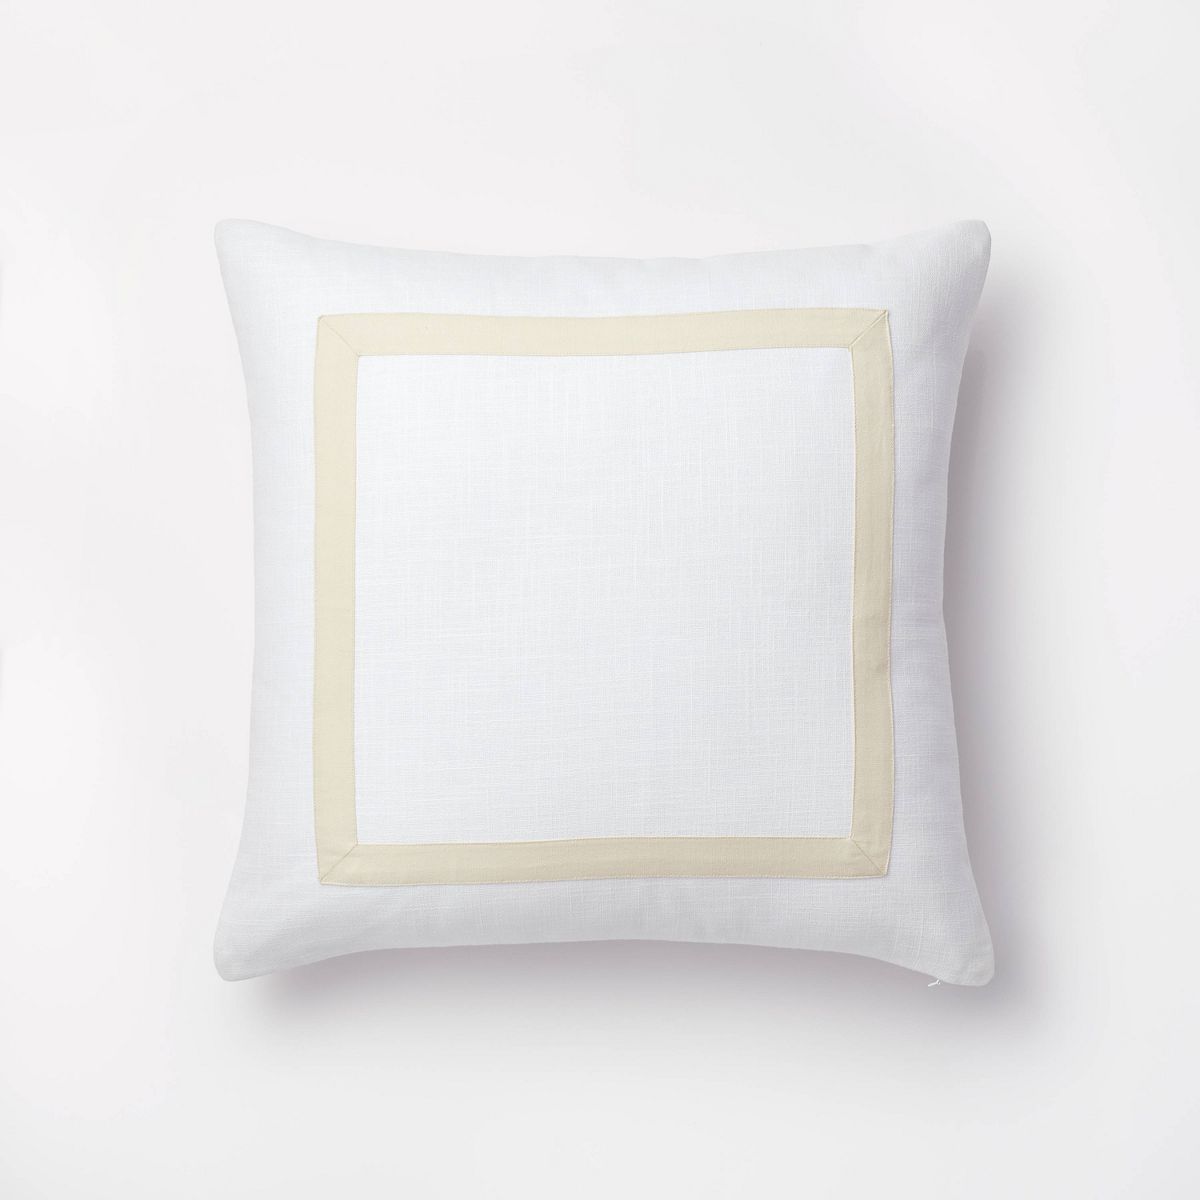 Euro Cotton Slub Border Applique Decorative Throw Pillow White/Camel - Threshold™ designed with... | Target